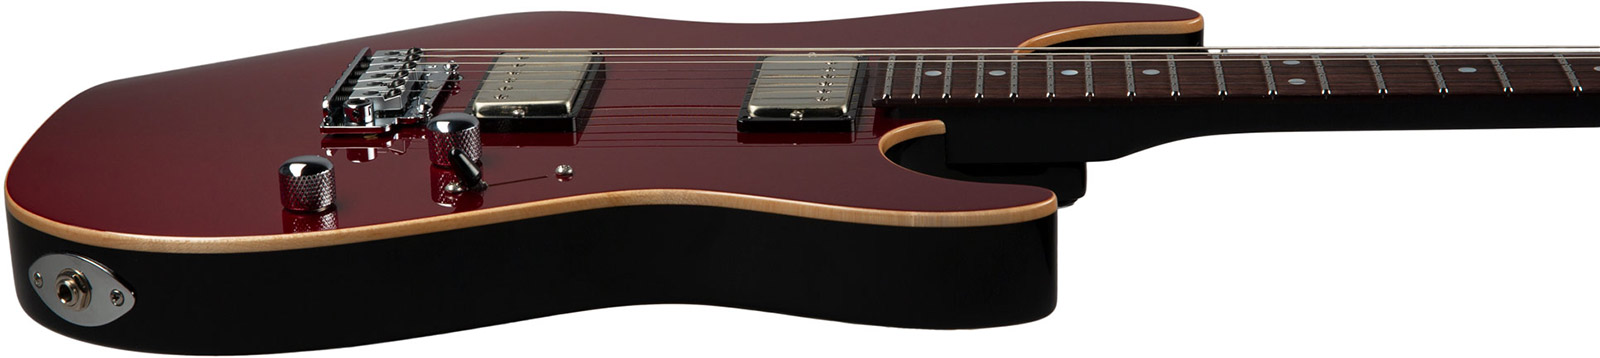 Suhr Pete Thorn Standard 01-sig-0029 Signature 2h Trem Rw - Garnet Red - E-Gitarre in Str-Form - Variation 2